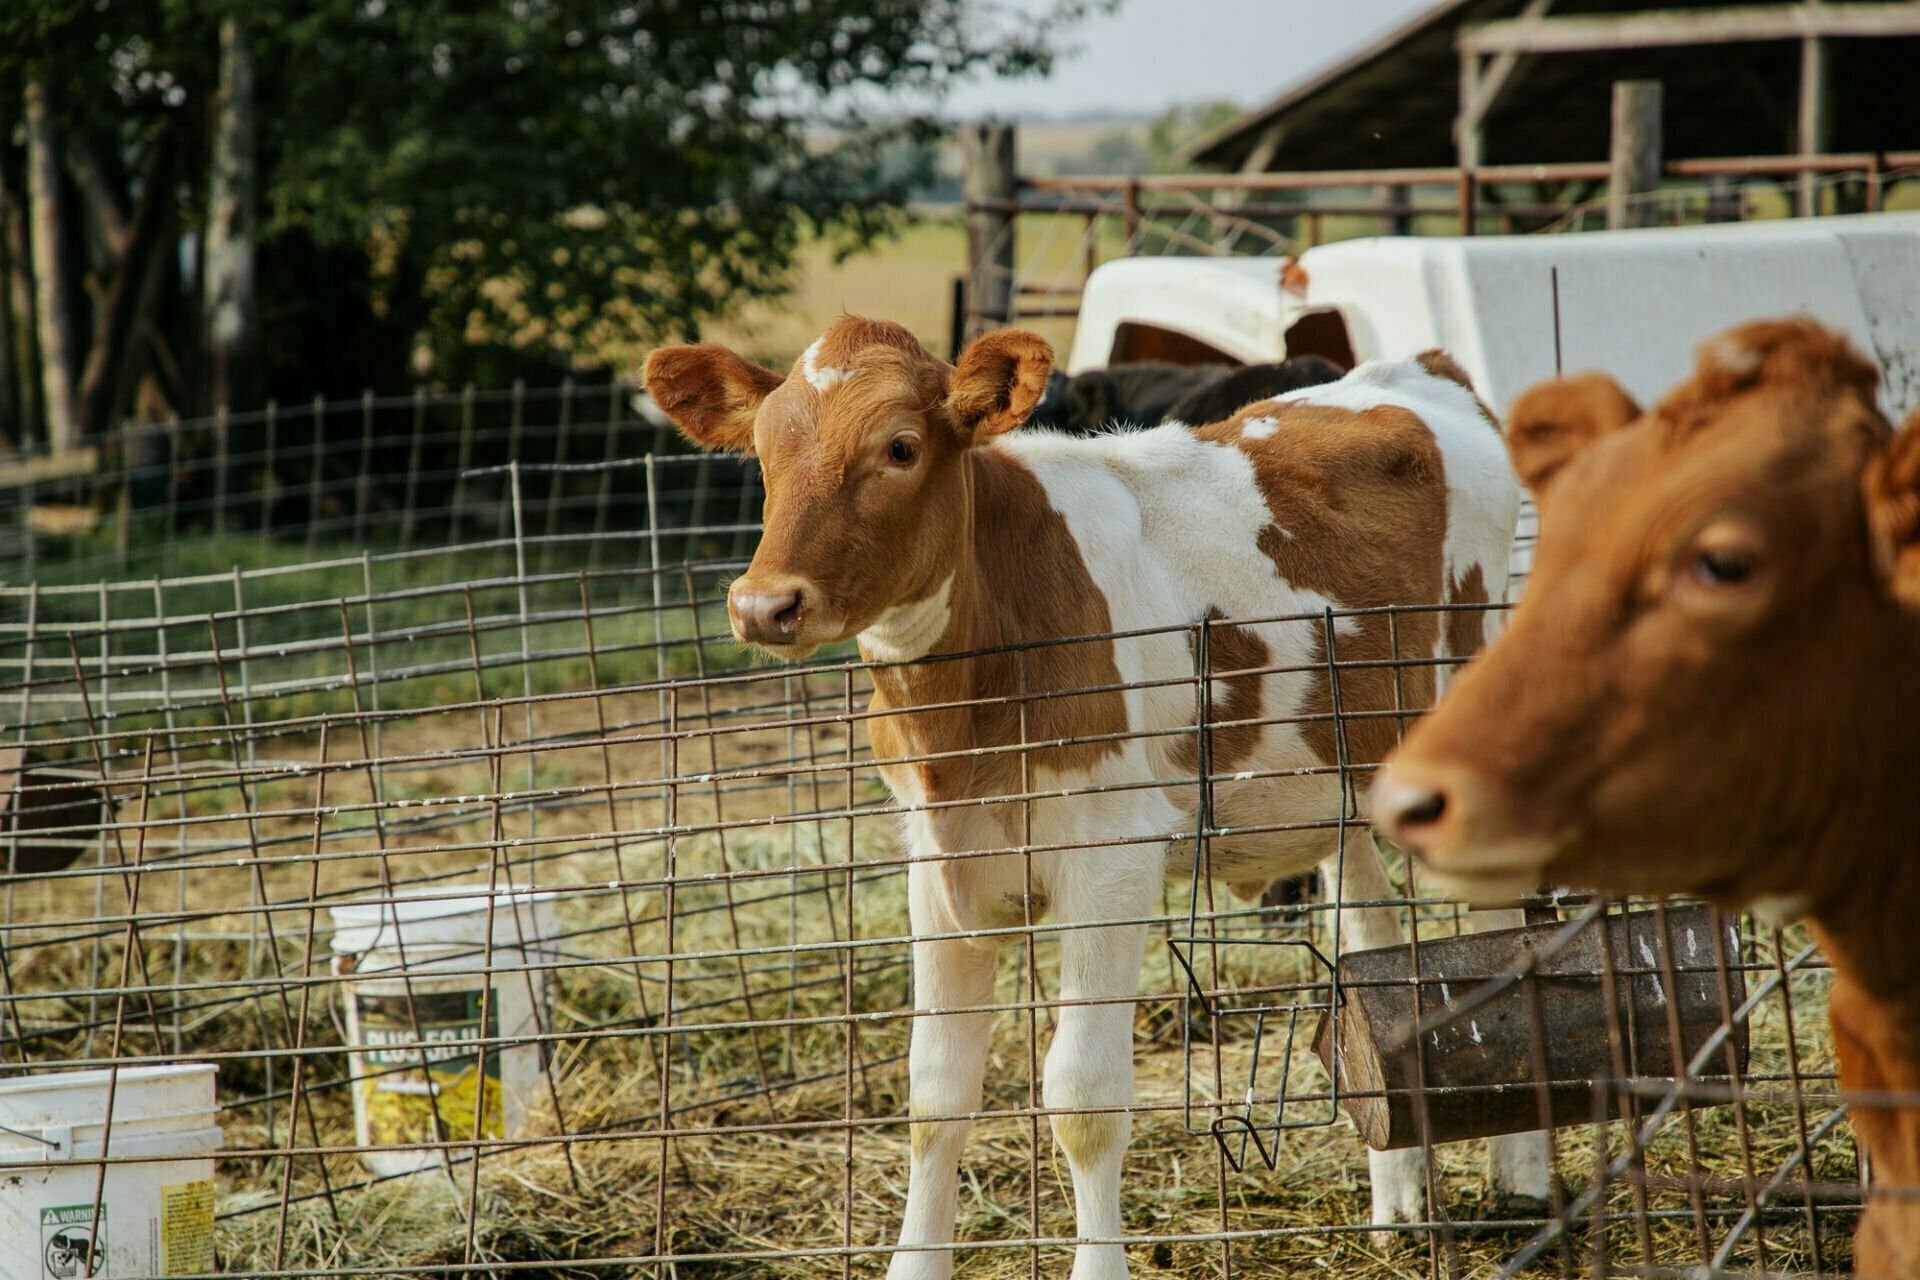 A calf in a pasture.